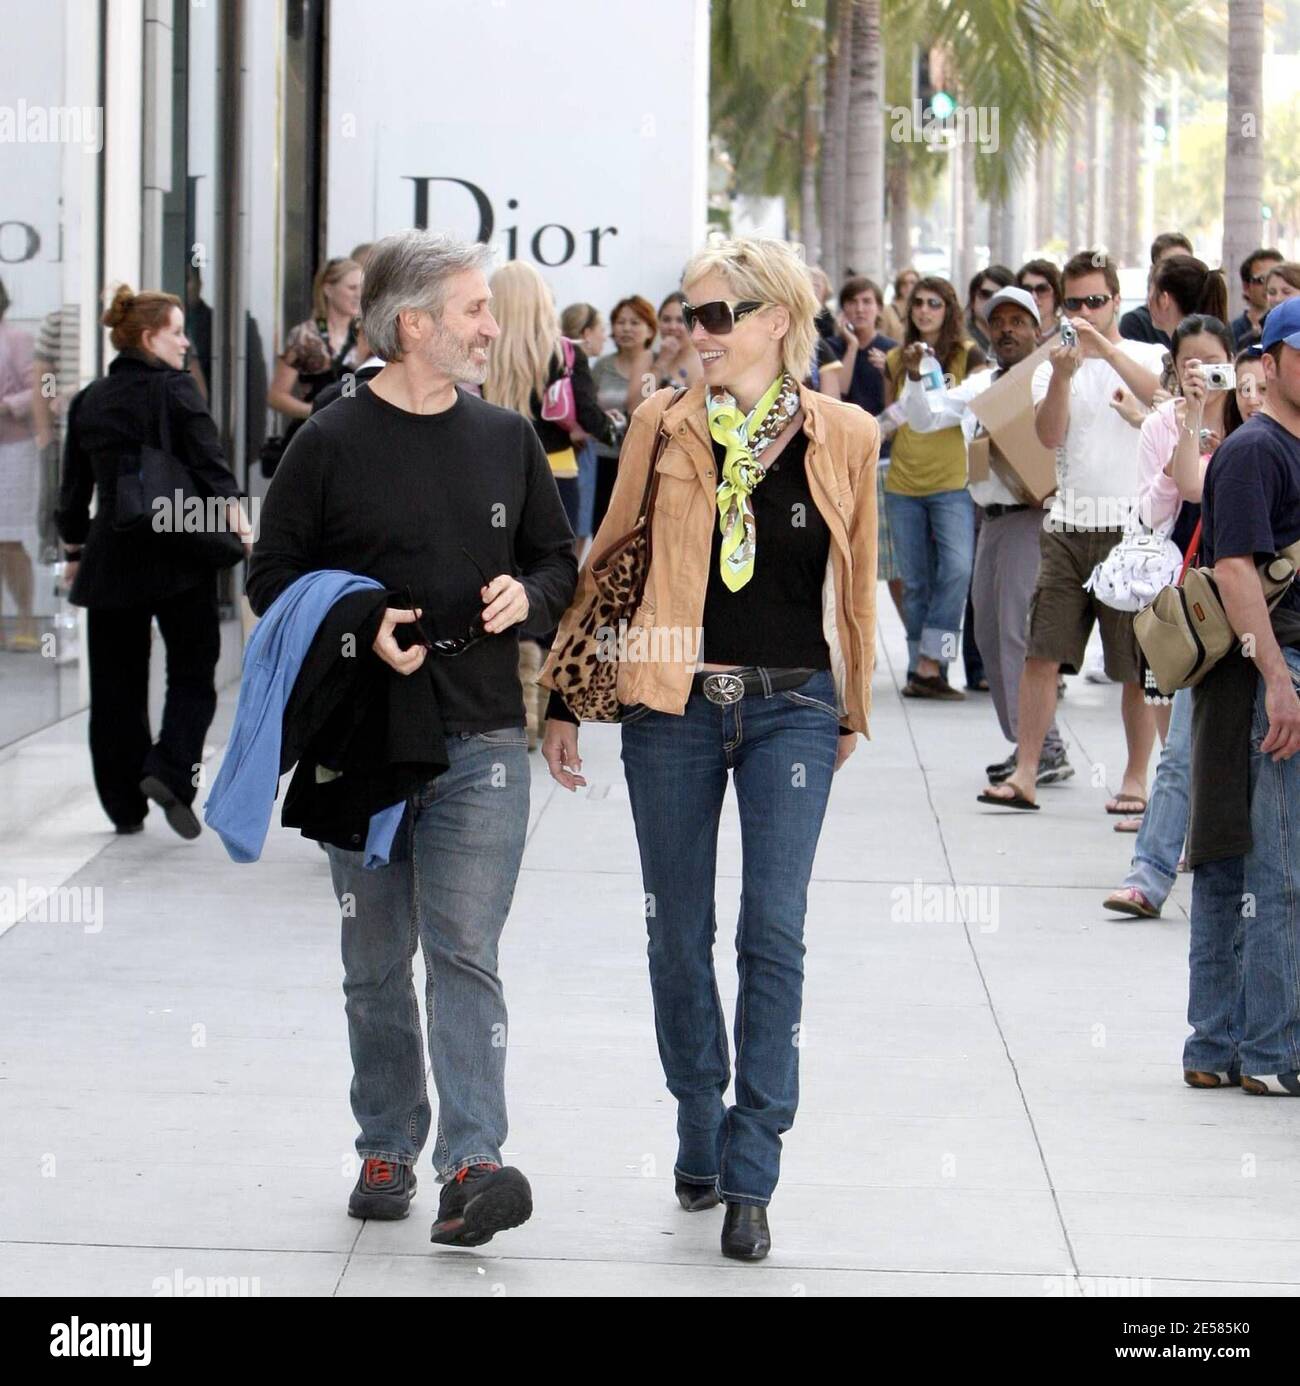 Una Perky Sharon Stone e il suo nuovo negozio di beau e passeggiate a Beverly Hills, California. La coppia sorride e ride tutto il tempo mentre si riunivano folle di curiosi acquirenti. Le soste ai box includevano il negozio Dior e un edificio medico dove Sharon diede una donazione a una signora senza casa. 5/16/07. [[rac ral]] Foto Stock